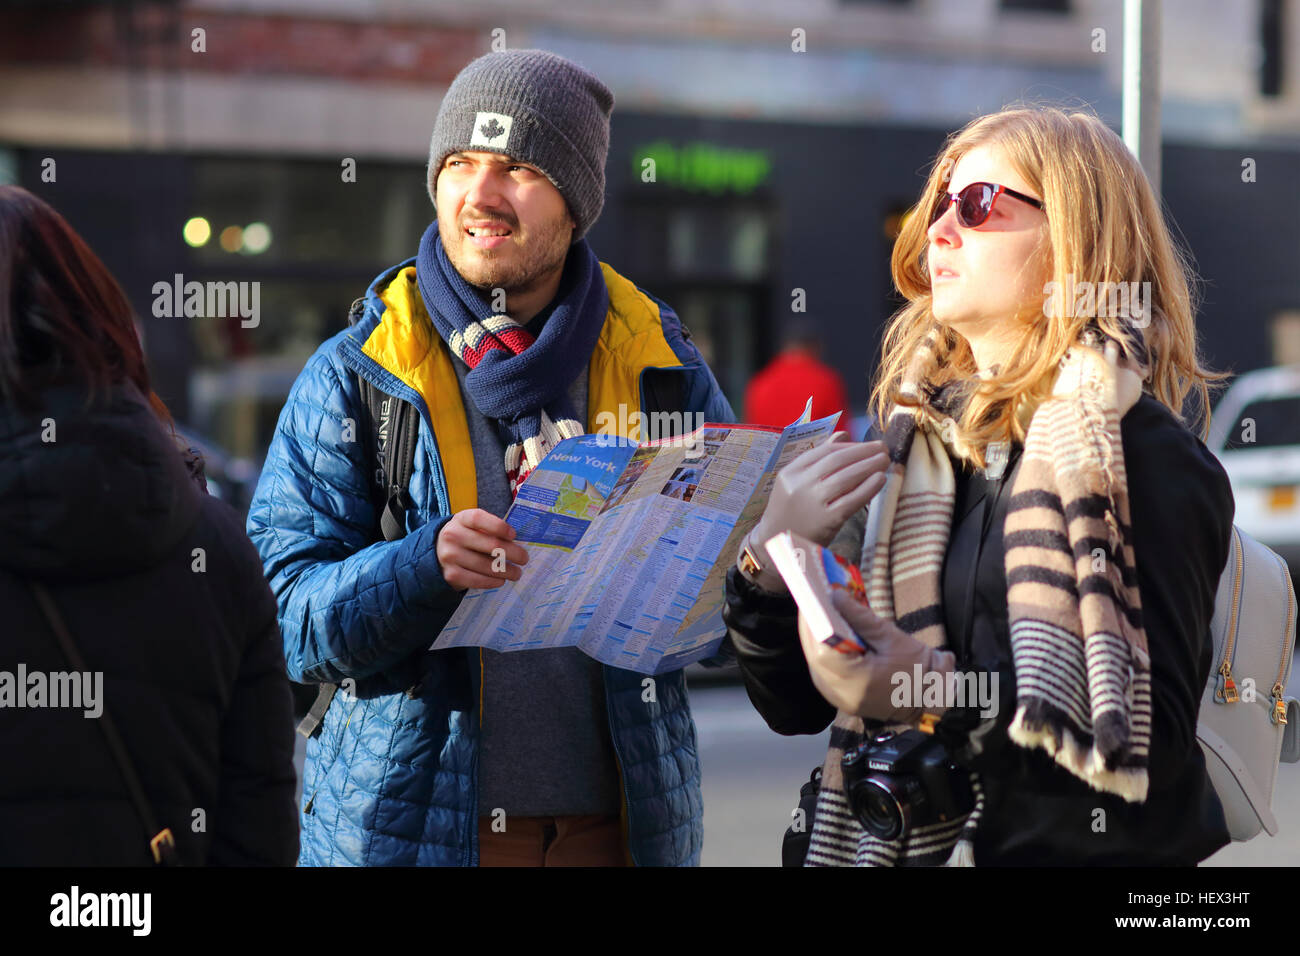 Deux touristes avec une carte de New york, un guide et un appareil photo semblent perplexes et perdus Banque D'Images